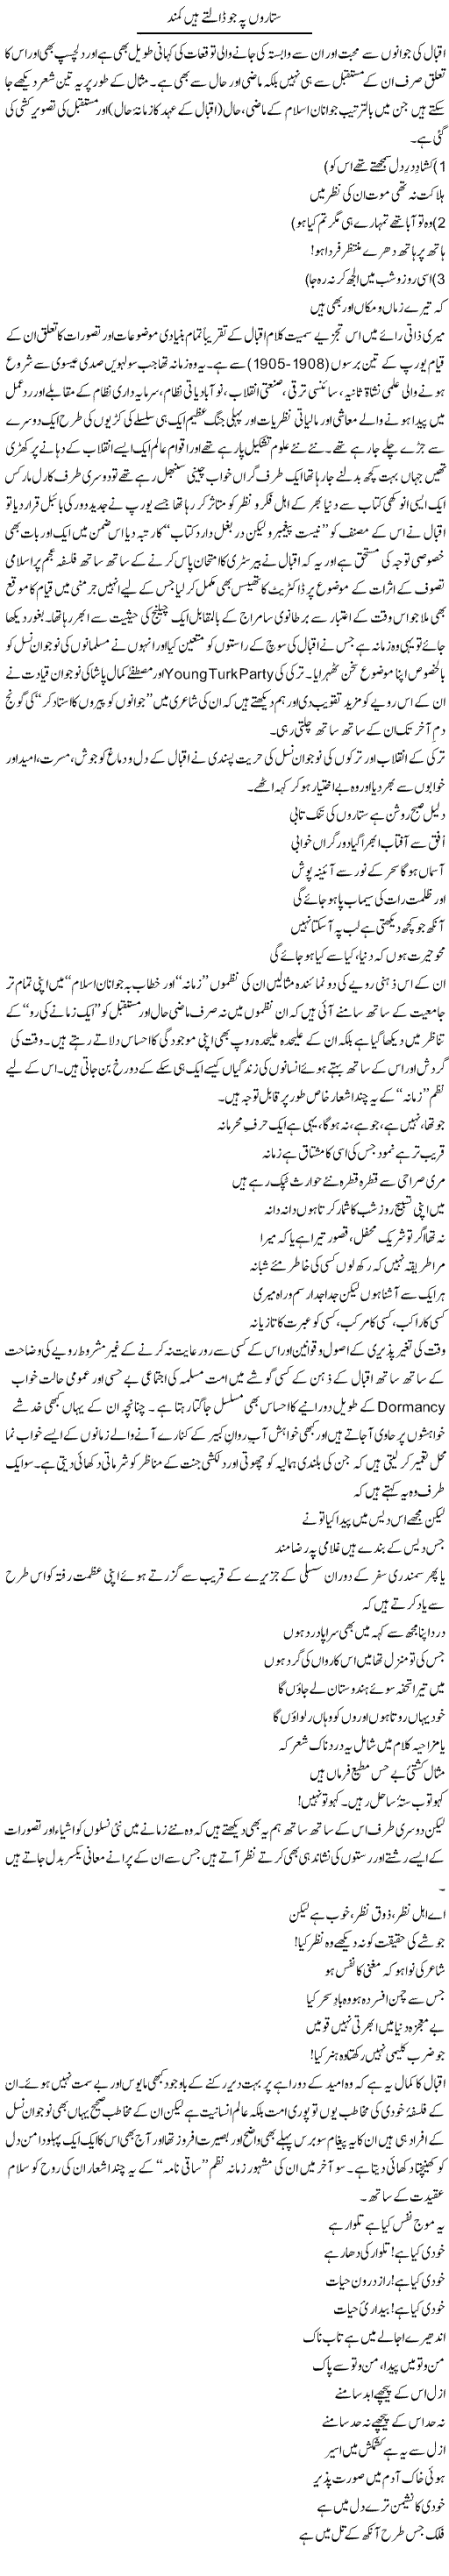 Sitaron Pe Jo Dalte Hain Kammand | Amjad Islam Amjad | Daily Urdu Columns